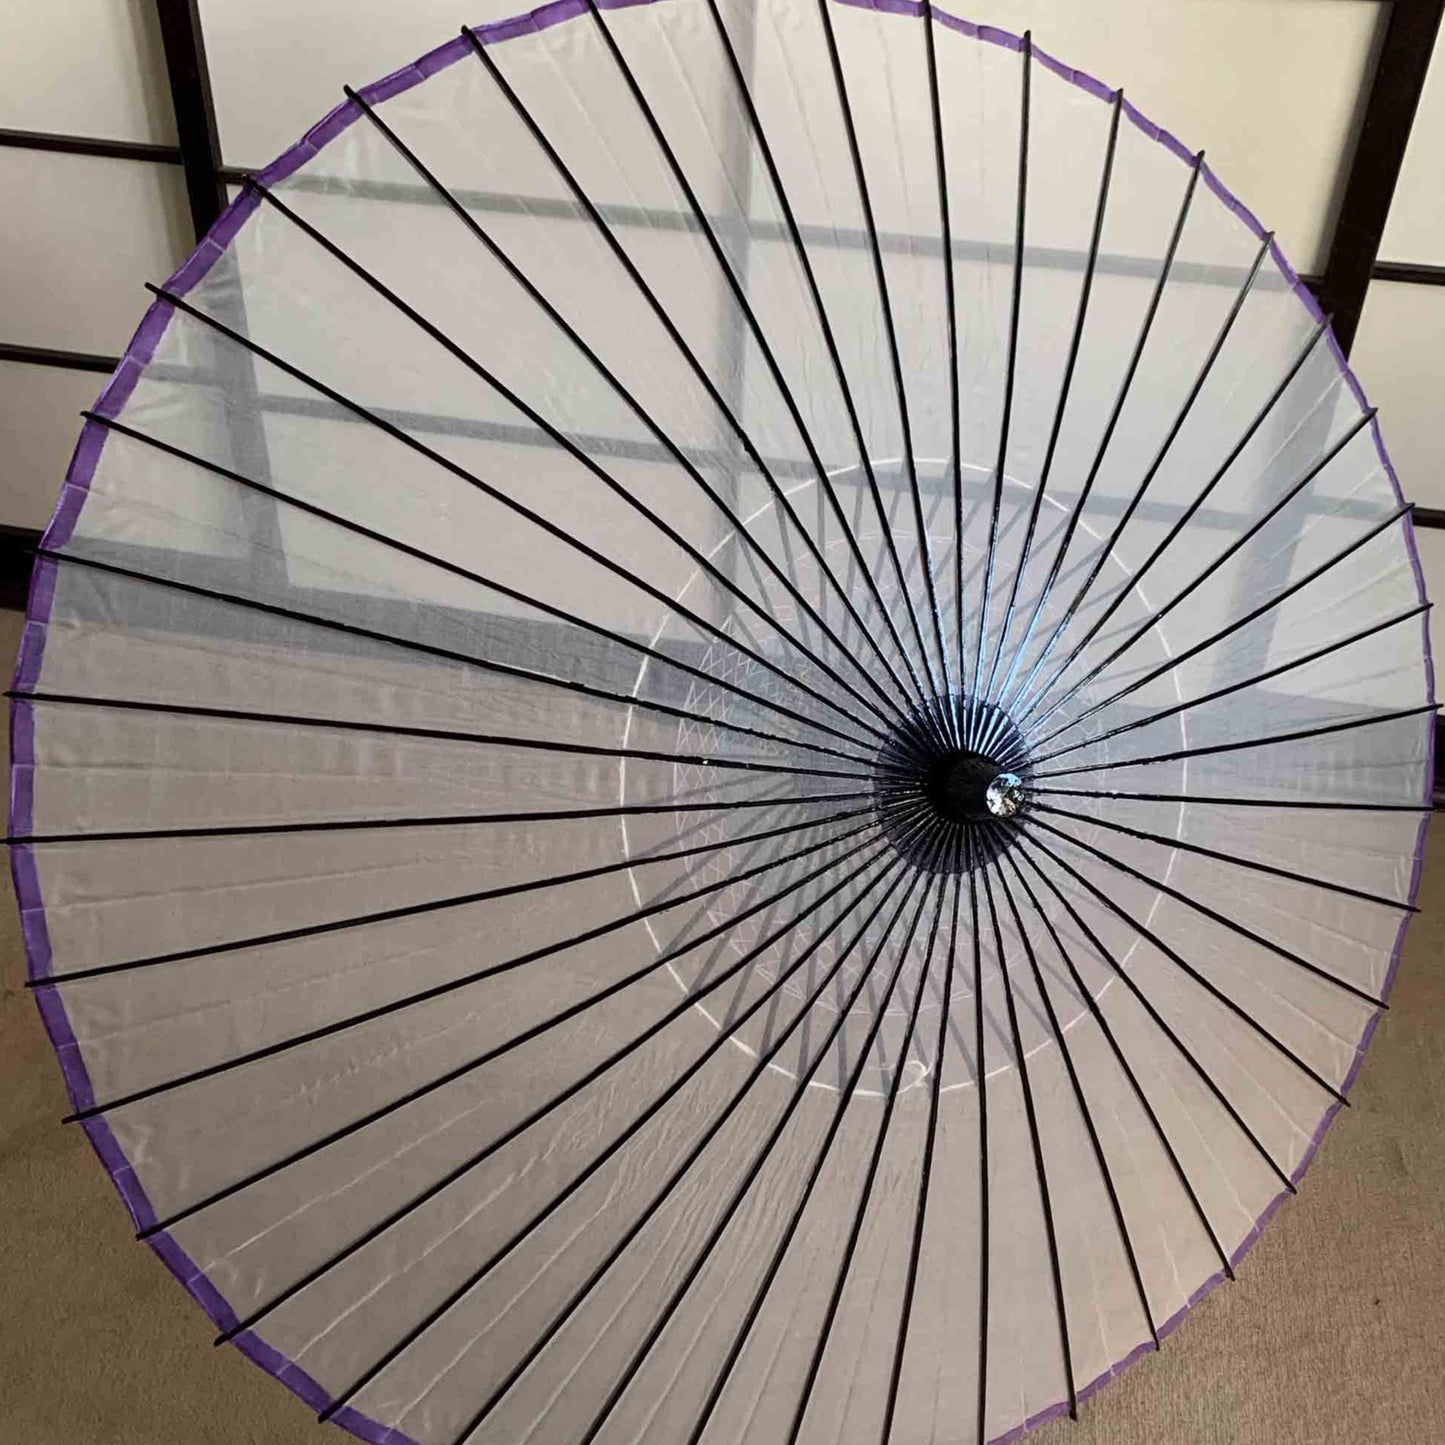 Parapluie traditionnel japonais kyowagasa en tissu transparent et bordures violettes